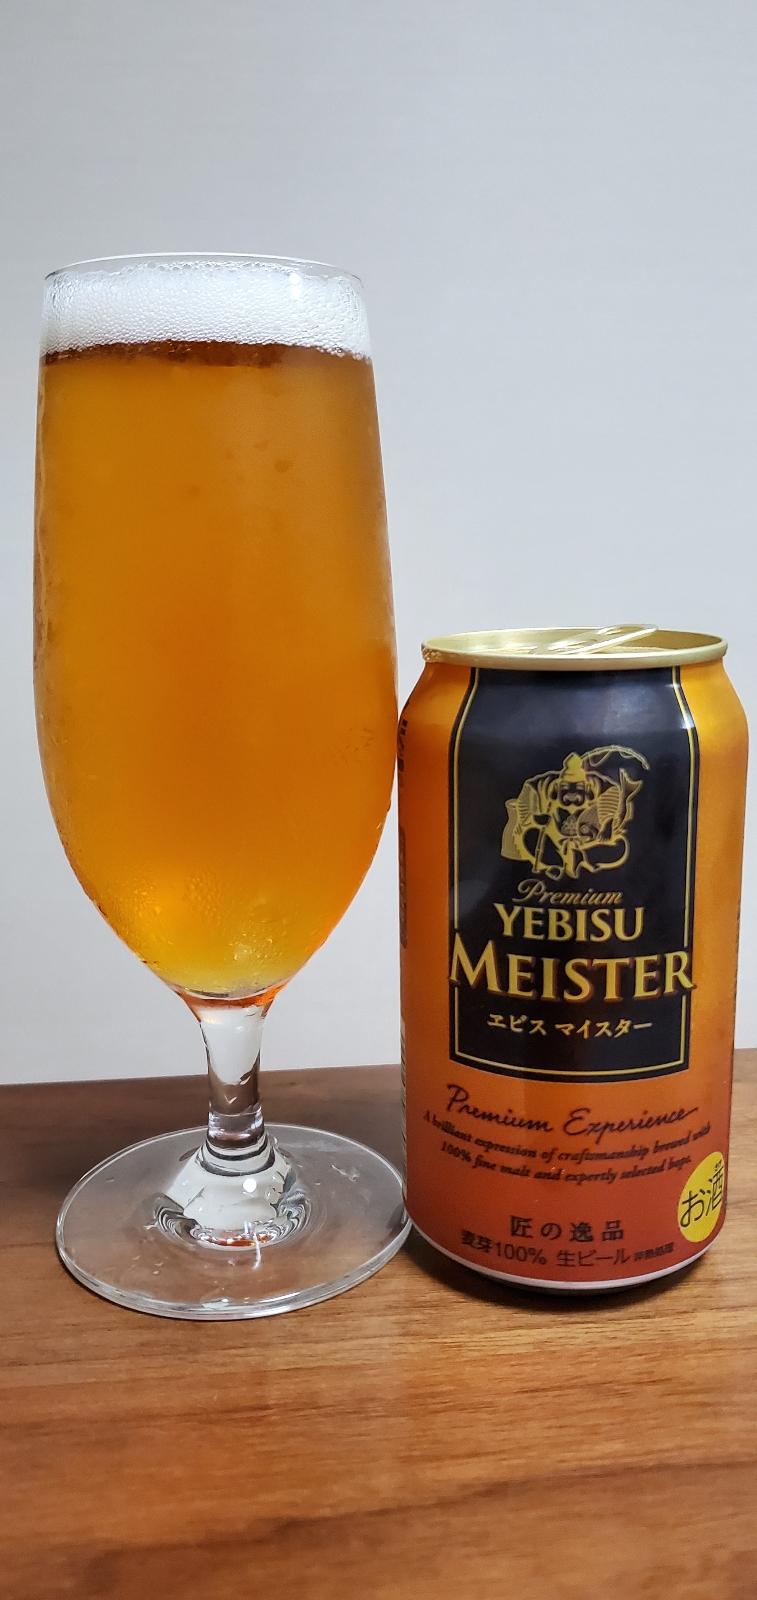 Yebisu Meister